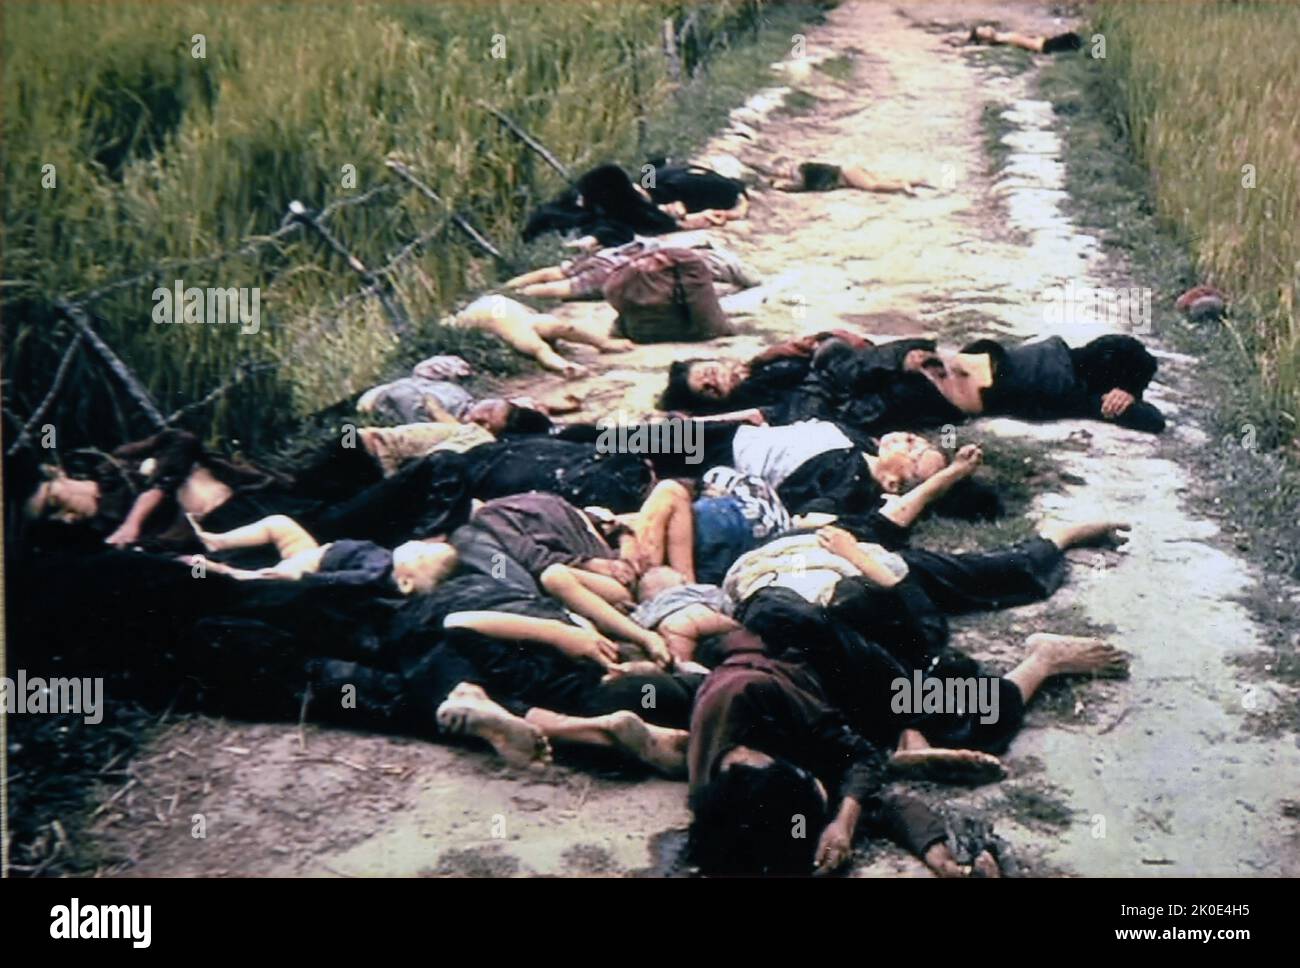 La masacre de My Lai, fue el asesinato masivo de civiles vietnamitas desarmados por tropas estadounidenses en el distrito de Son Tinh, Vietnam del Sur, el 16 de marzo de 1968 durante la Guerra de Vietnam. Entre 347 y 504 personas desarmadas fueron asesinadas por soldados del Ejército de los Estados Unidos. Foto de stock